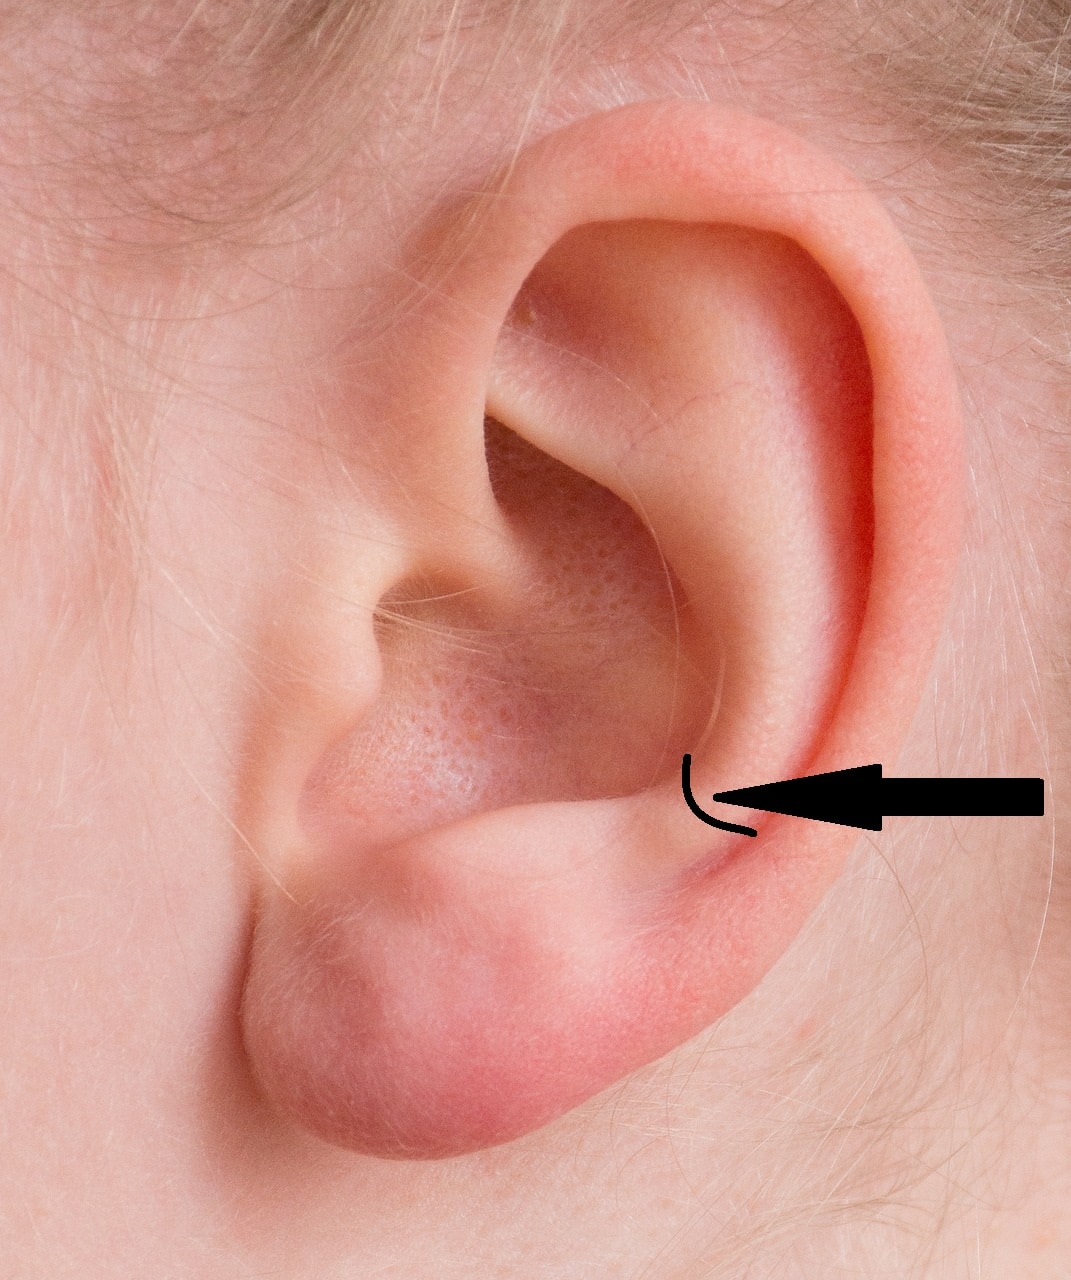 Anti tragus piercing location on ear